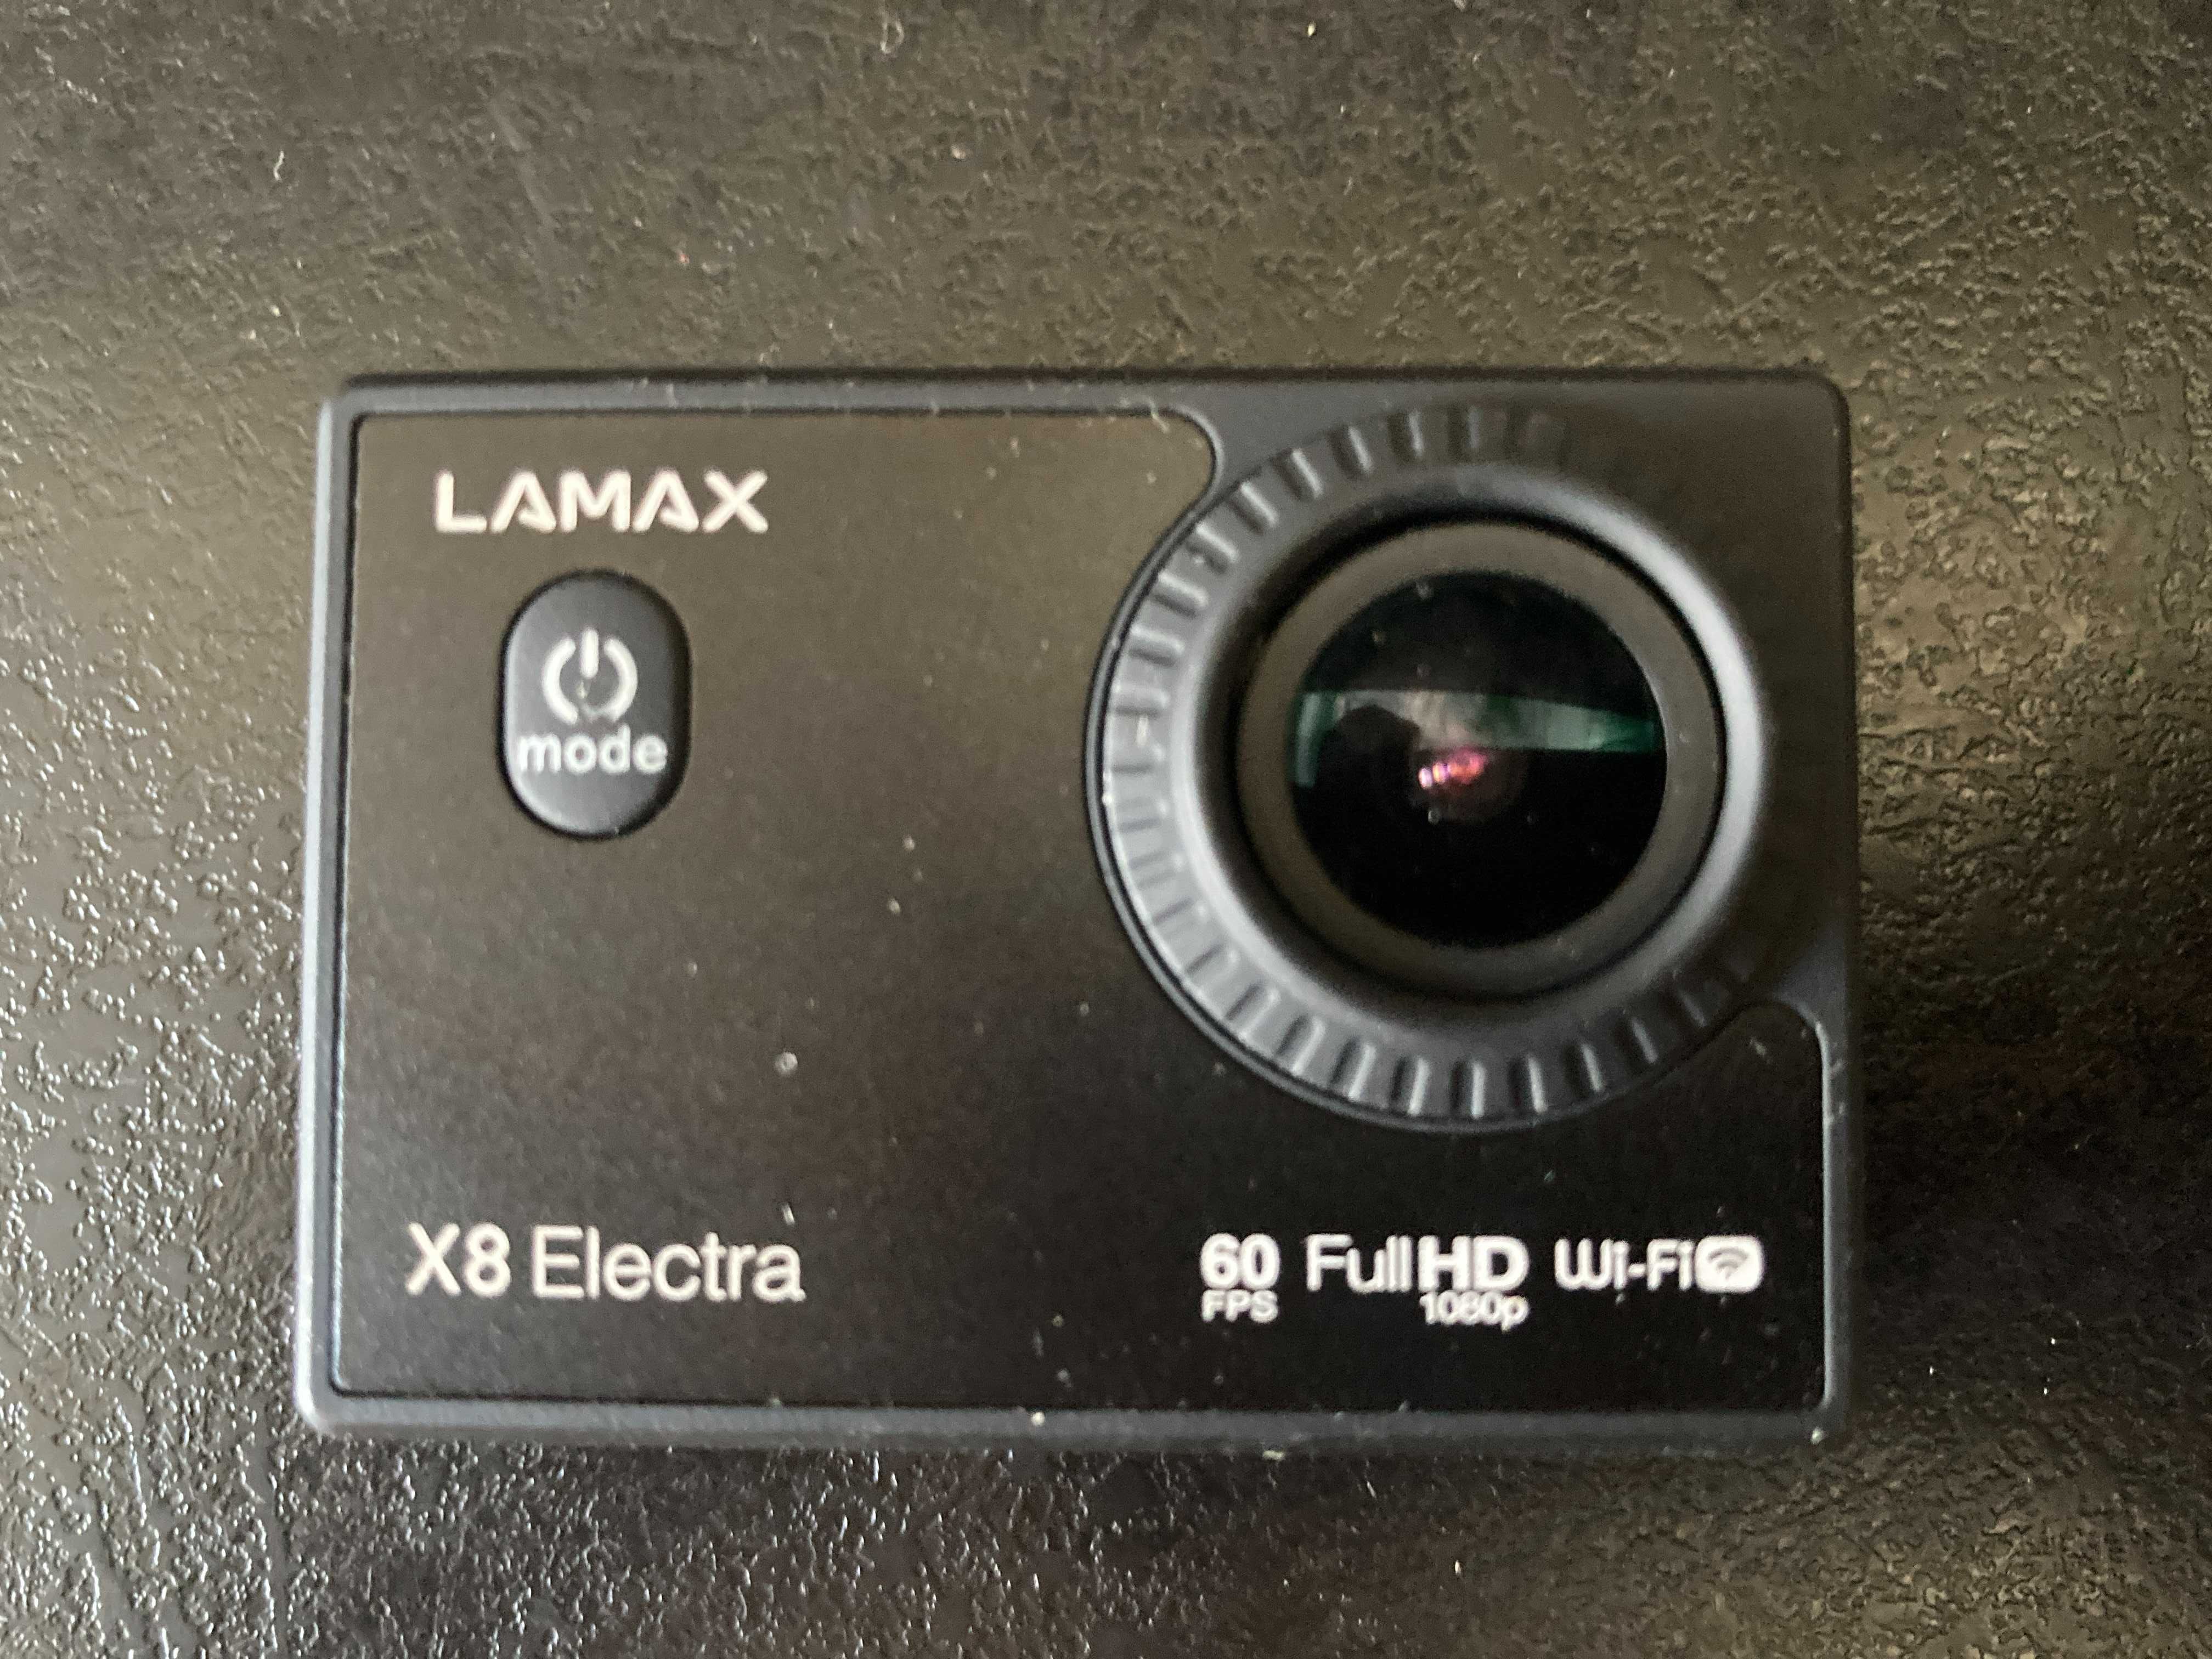 Super kamera Lamax plus gratis.